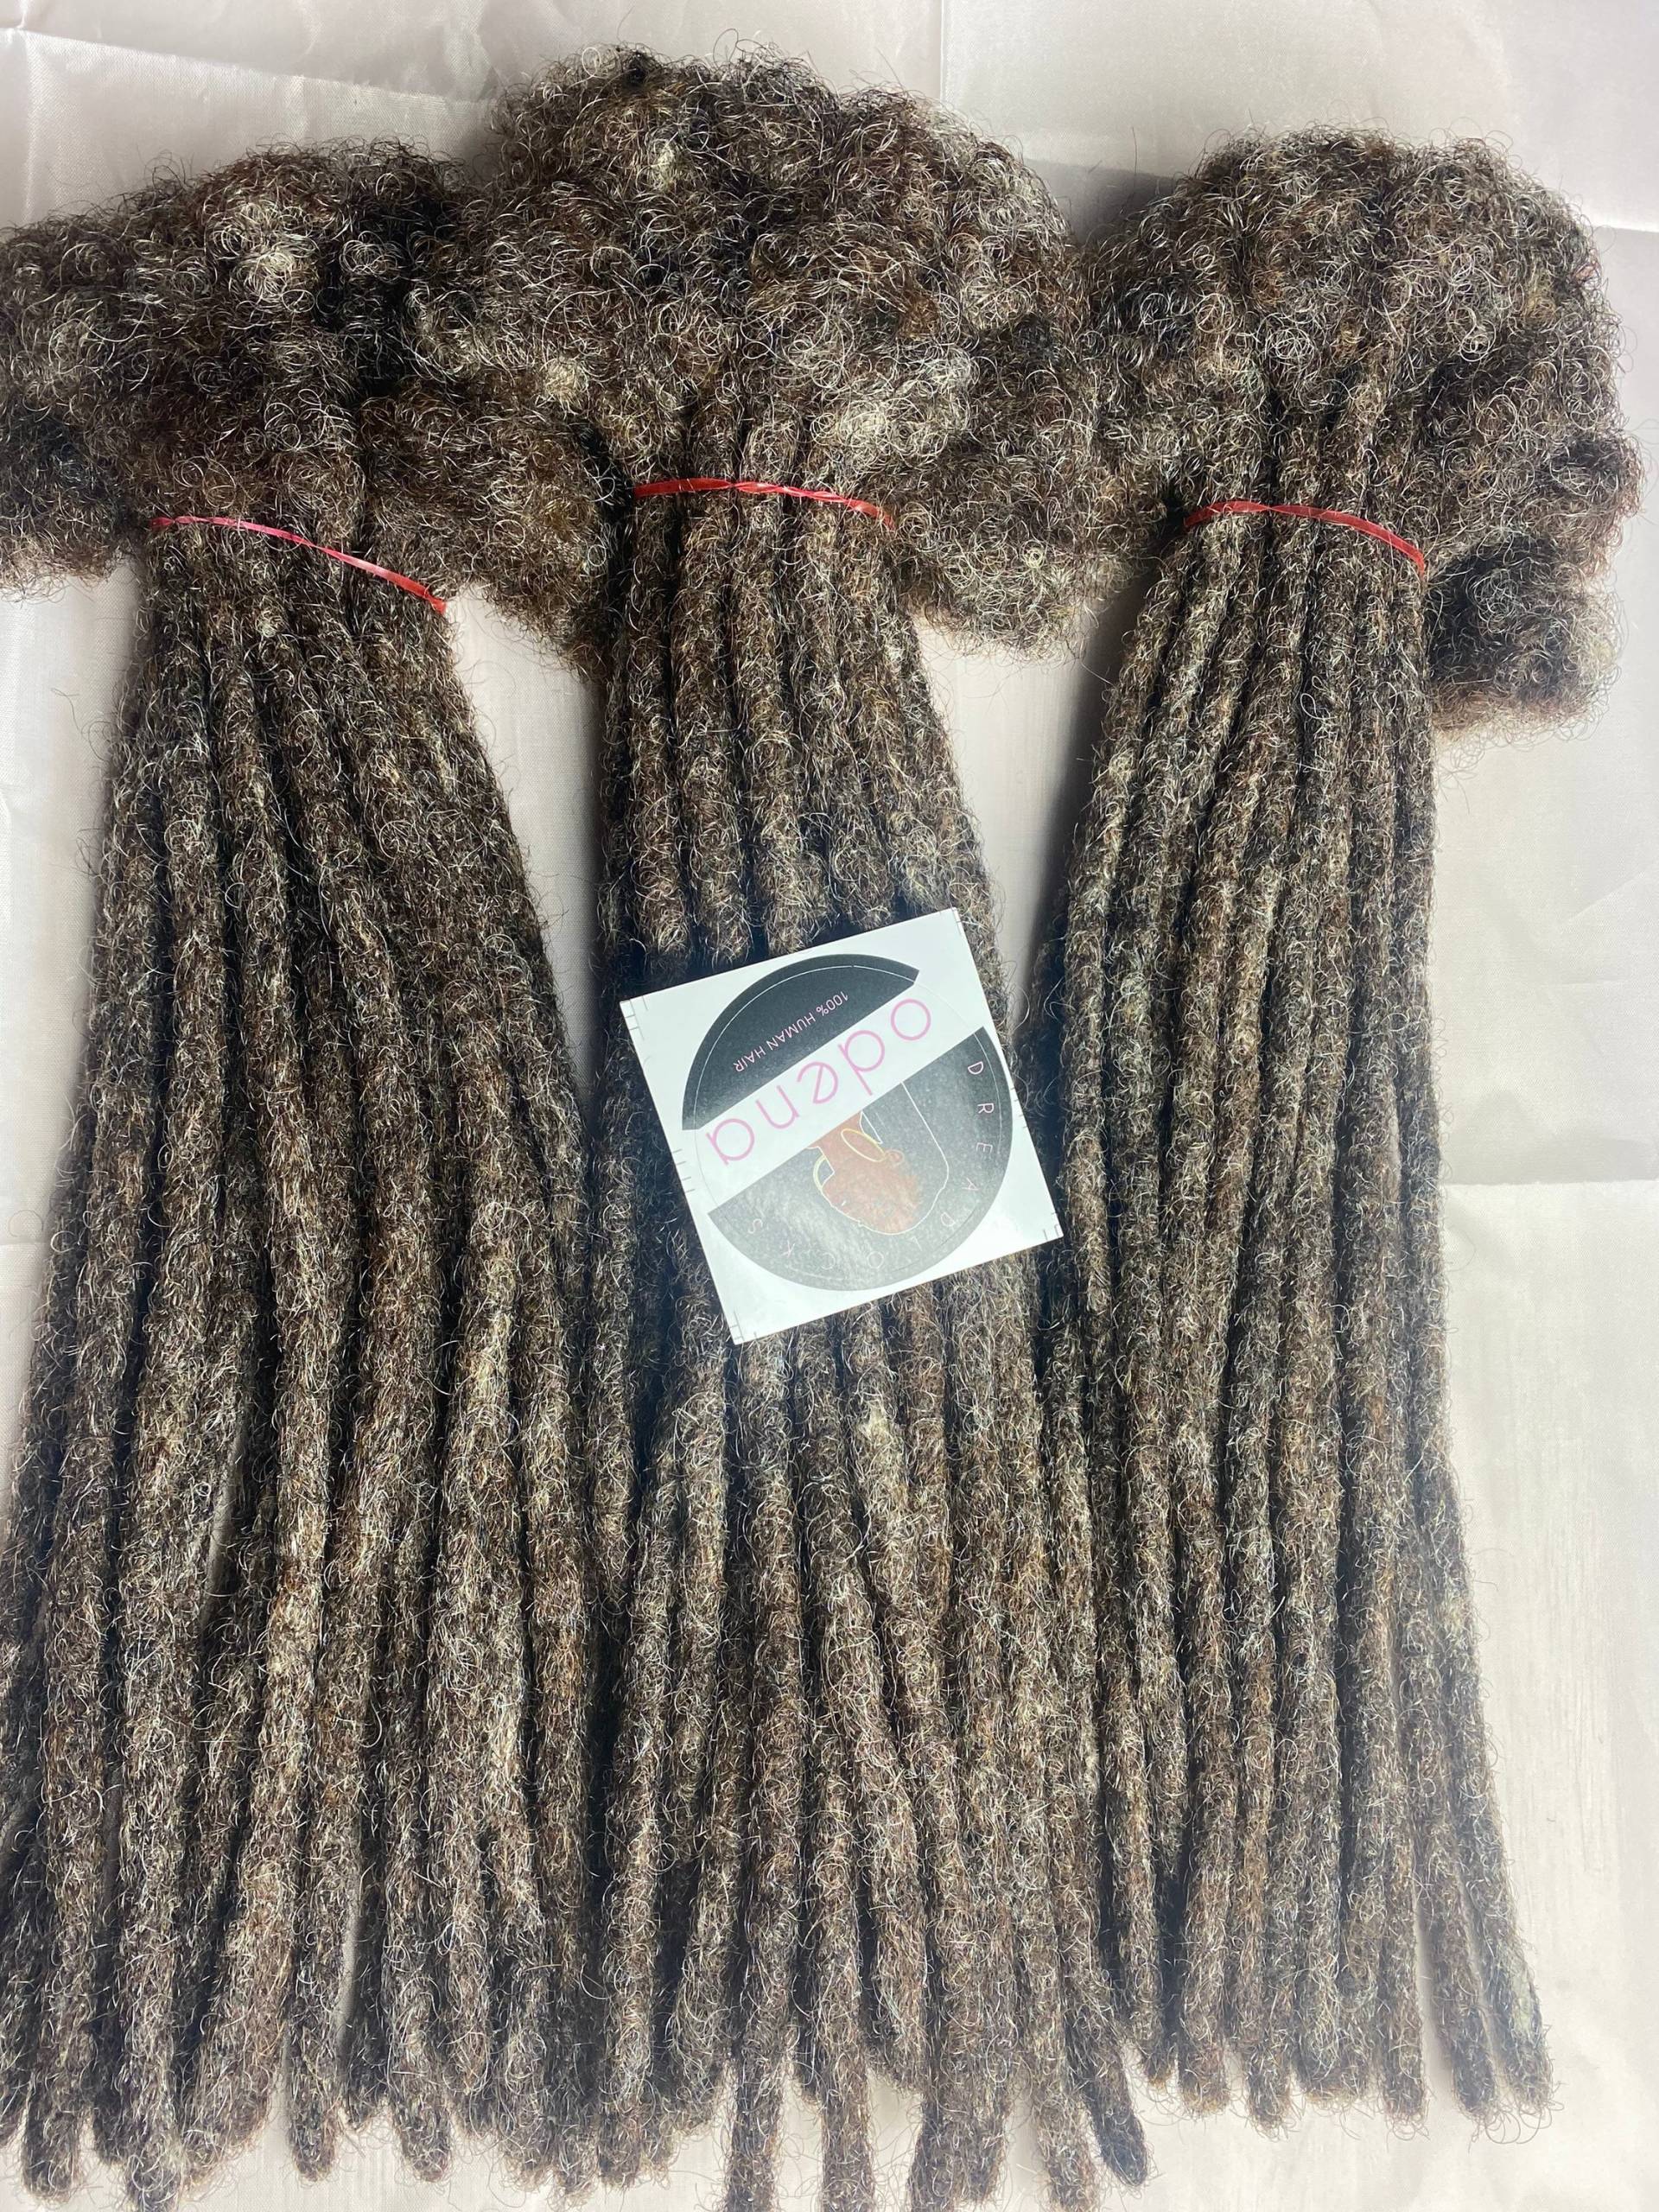 Mischung Aus Salz Und Pfeffer Farben #4 Human Hair Dreadlocks 60 Dreads 12Inches 0, 6cm Customizee Extensions von Etsy - Odenadreadlocks